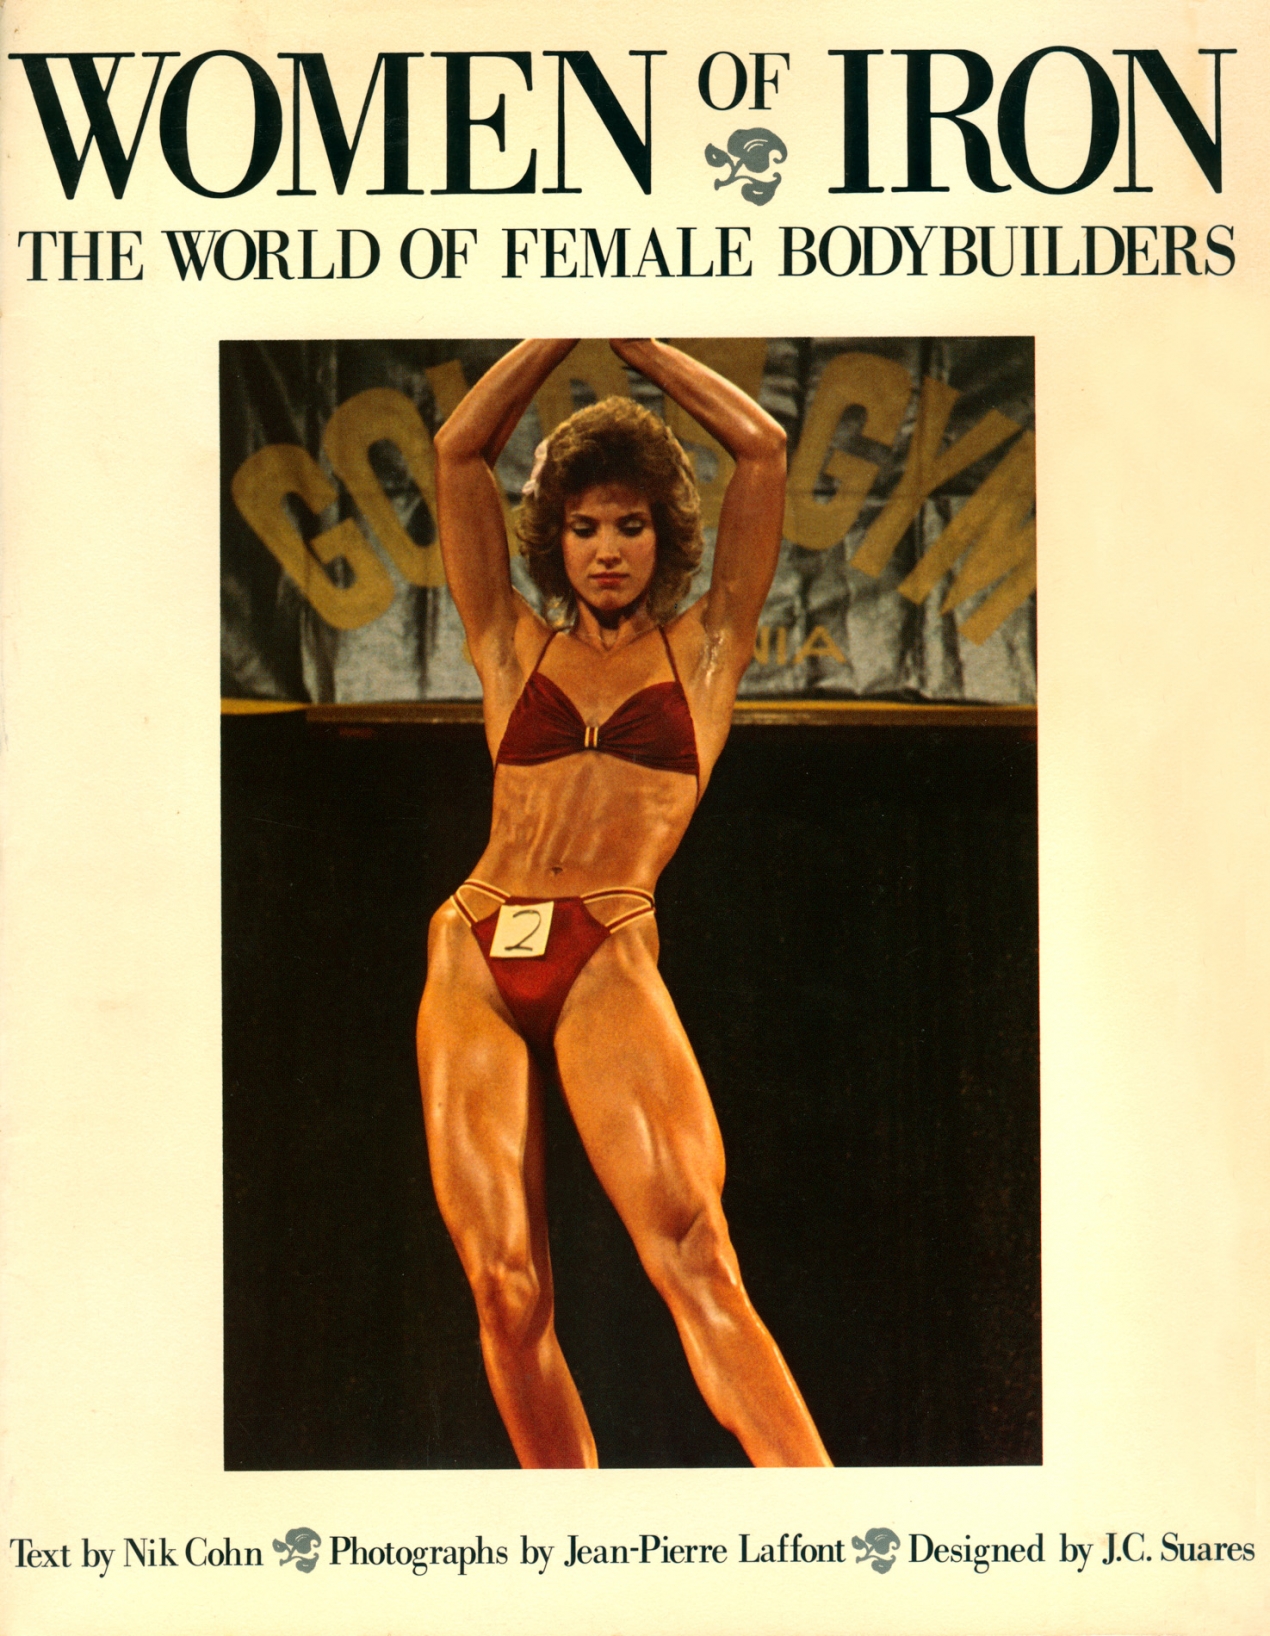 bodybuilding books for women